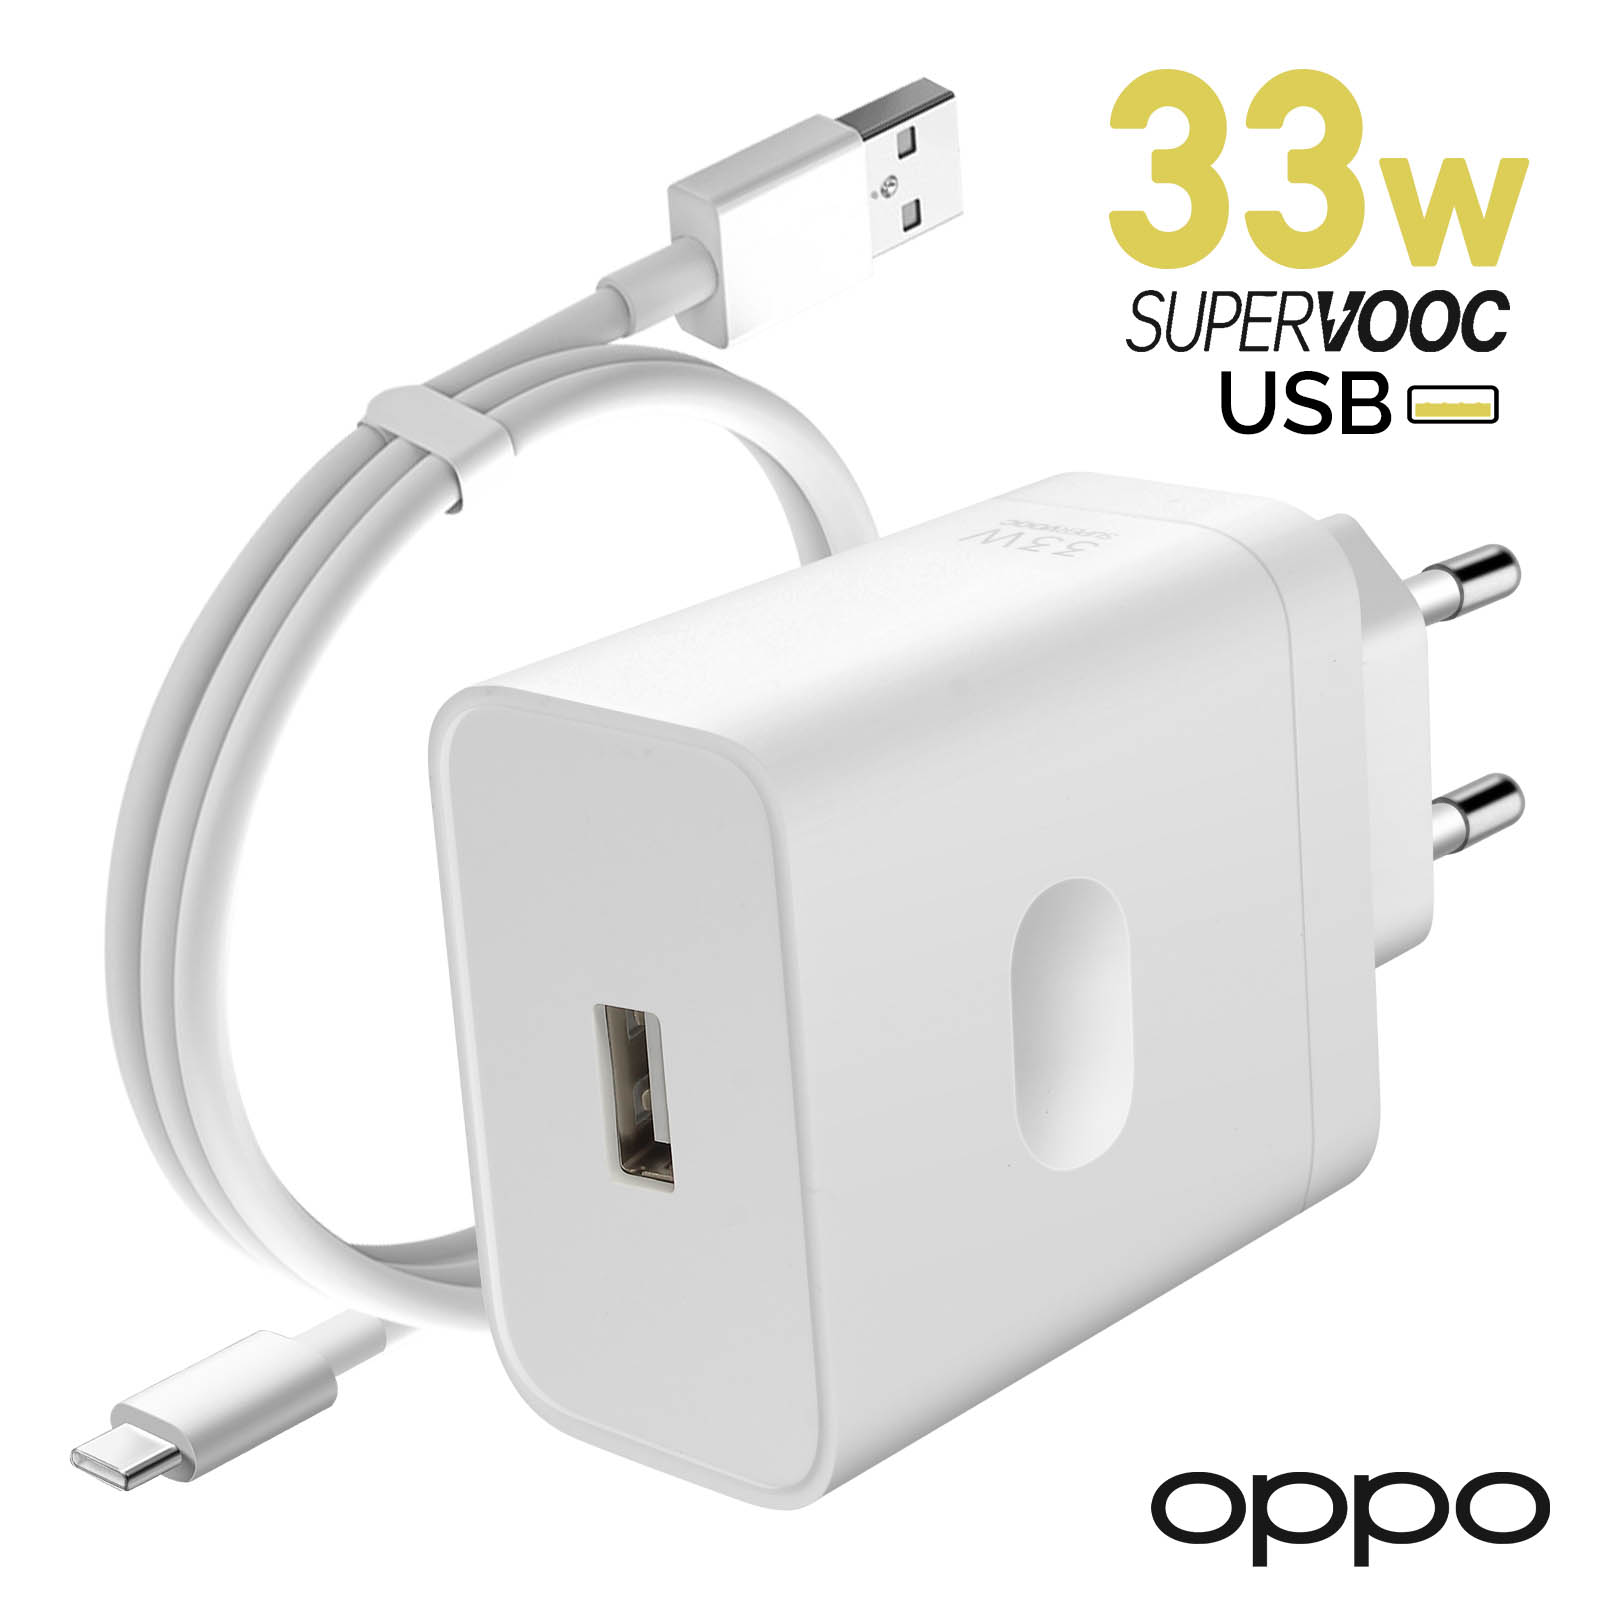 Chargeur secteur Oppo Original, USB SuperVOOC 33W + Câble USB vers USB-C -  Blanc